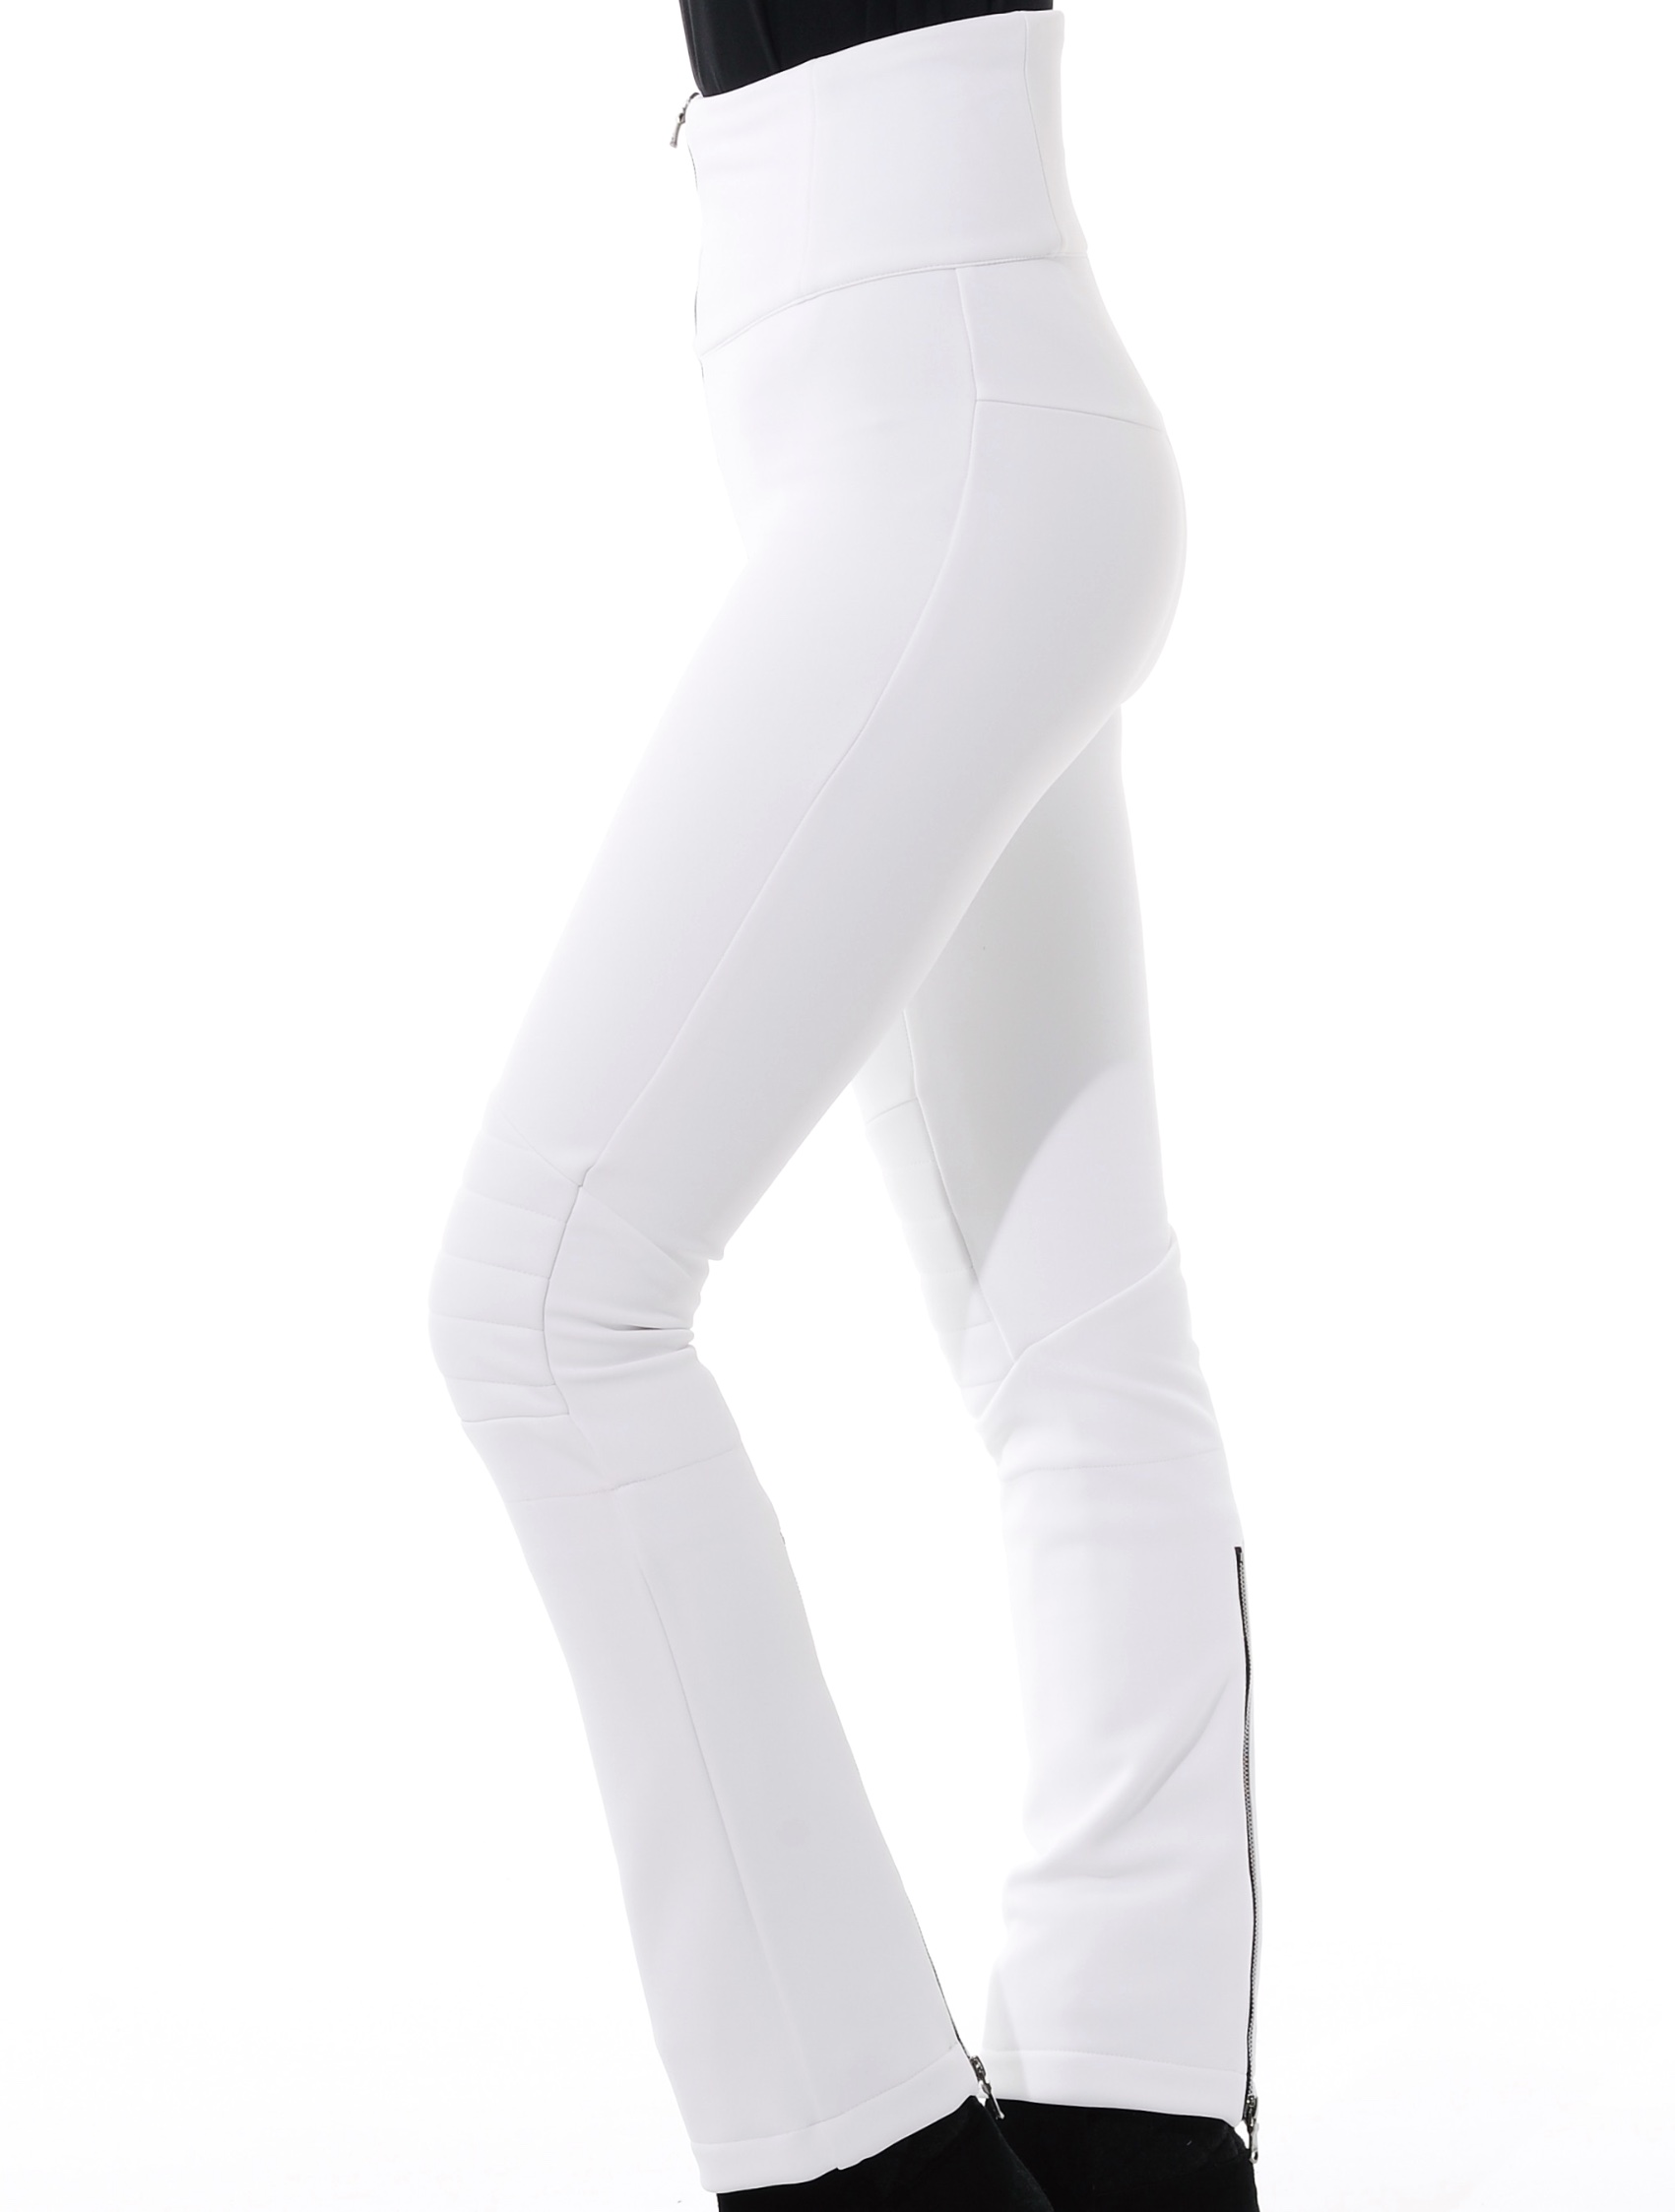 4way stretch jet pants white 